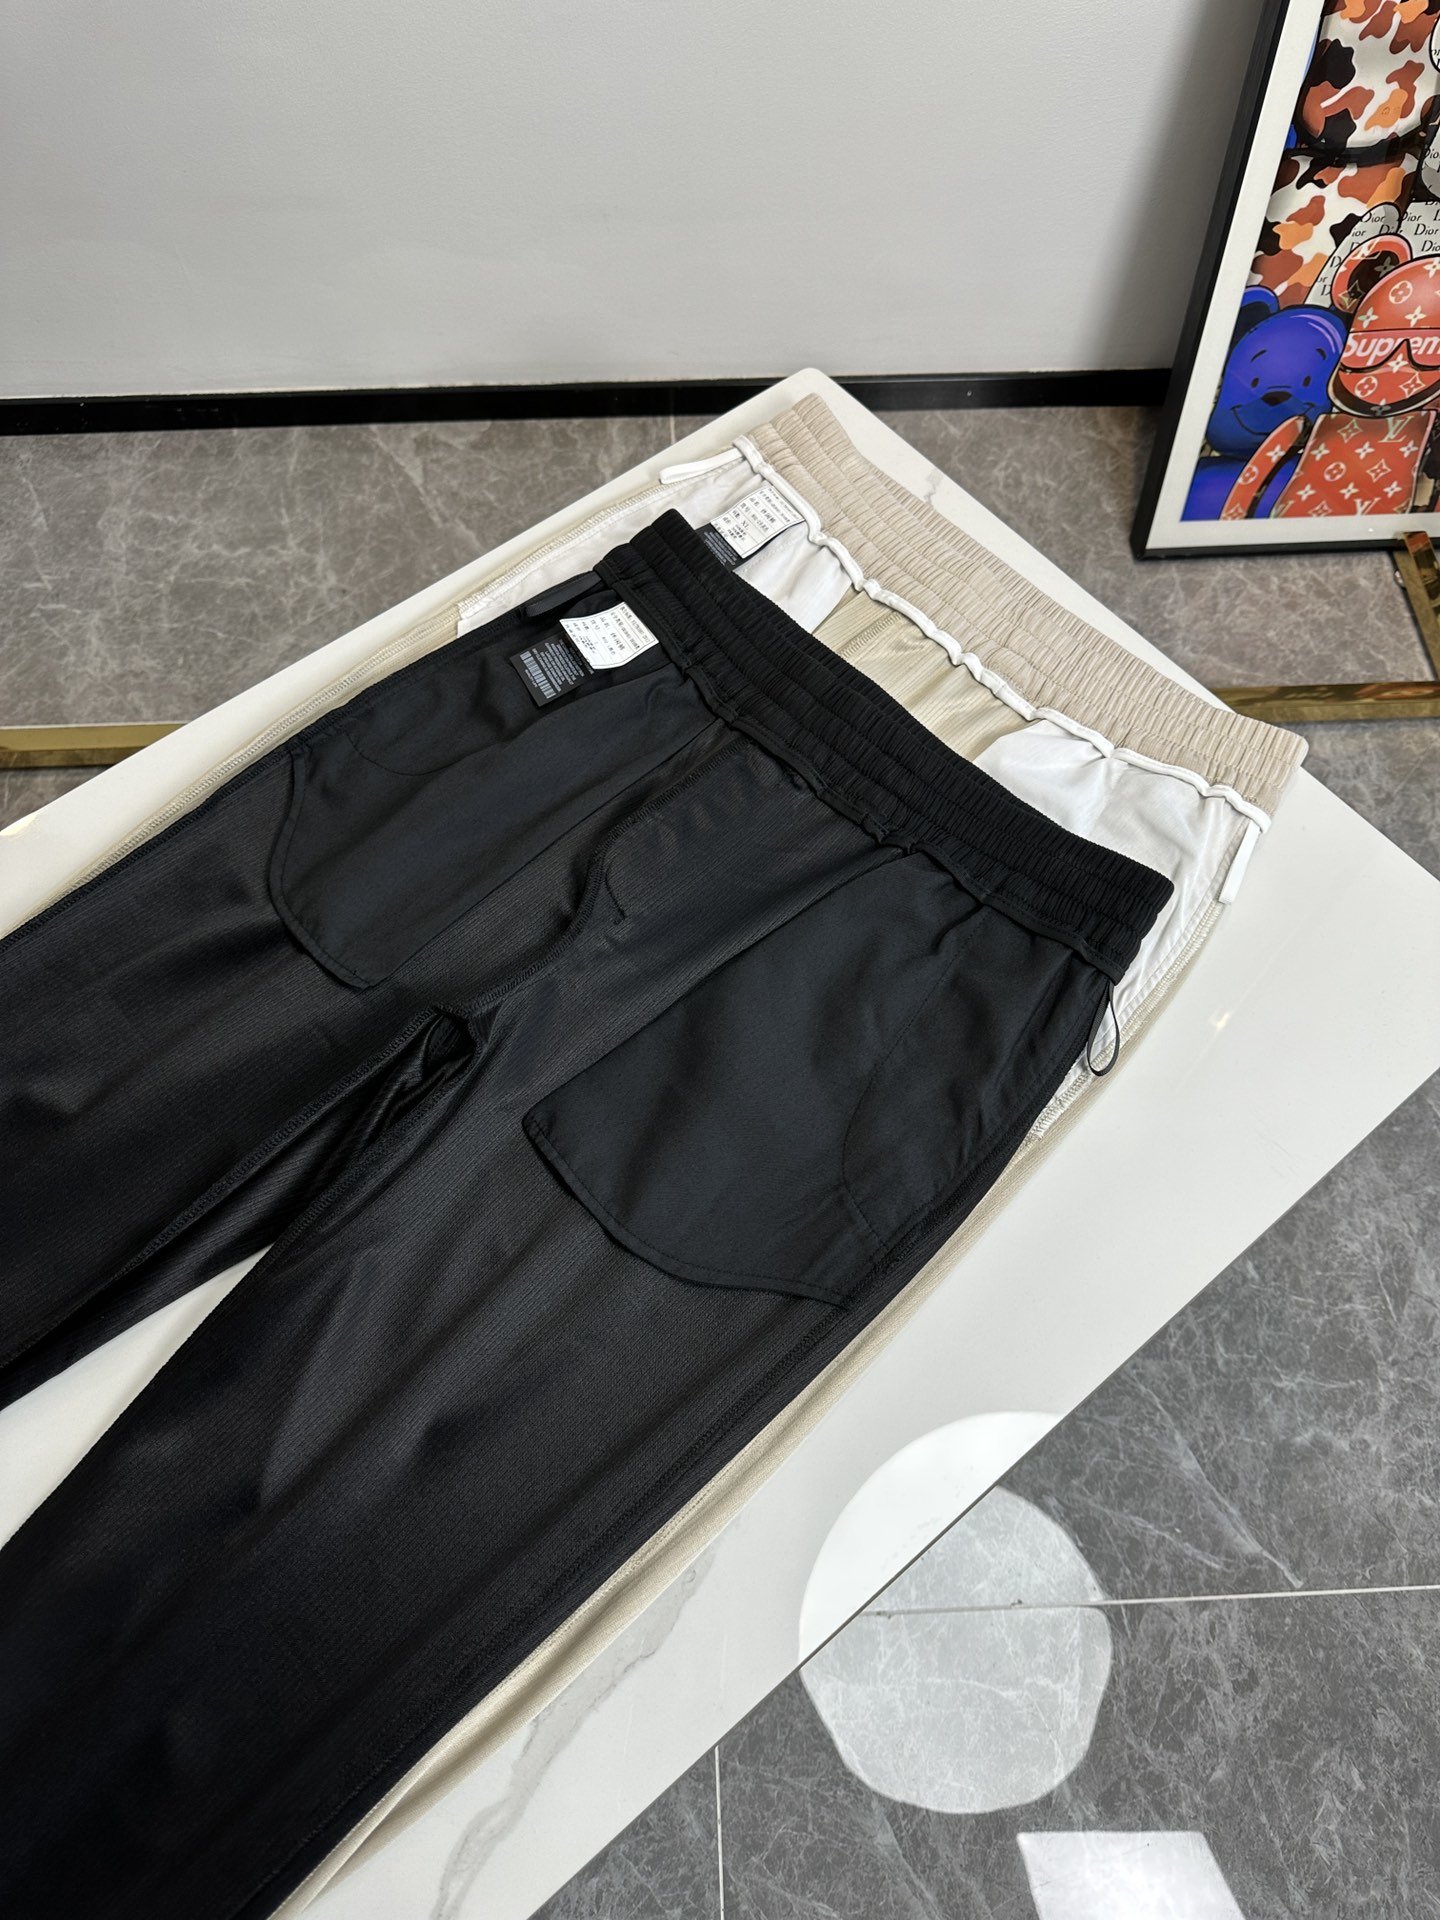 欧货G古家-234ss春夏新款进口纯棉质地复合面料再见基础款帅气卫裤.....一线时尚品牌出色独到的设计